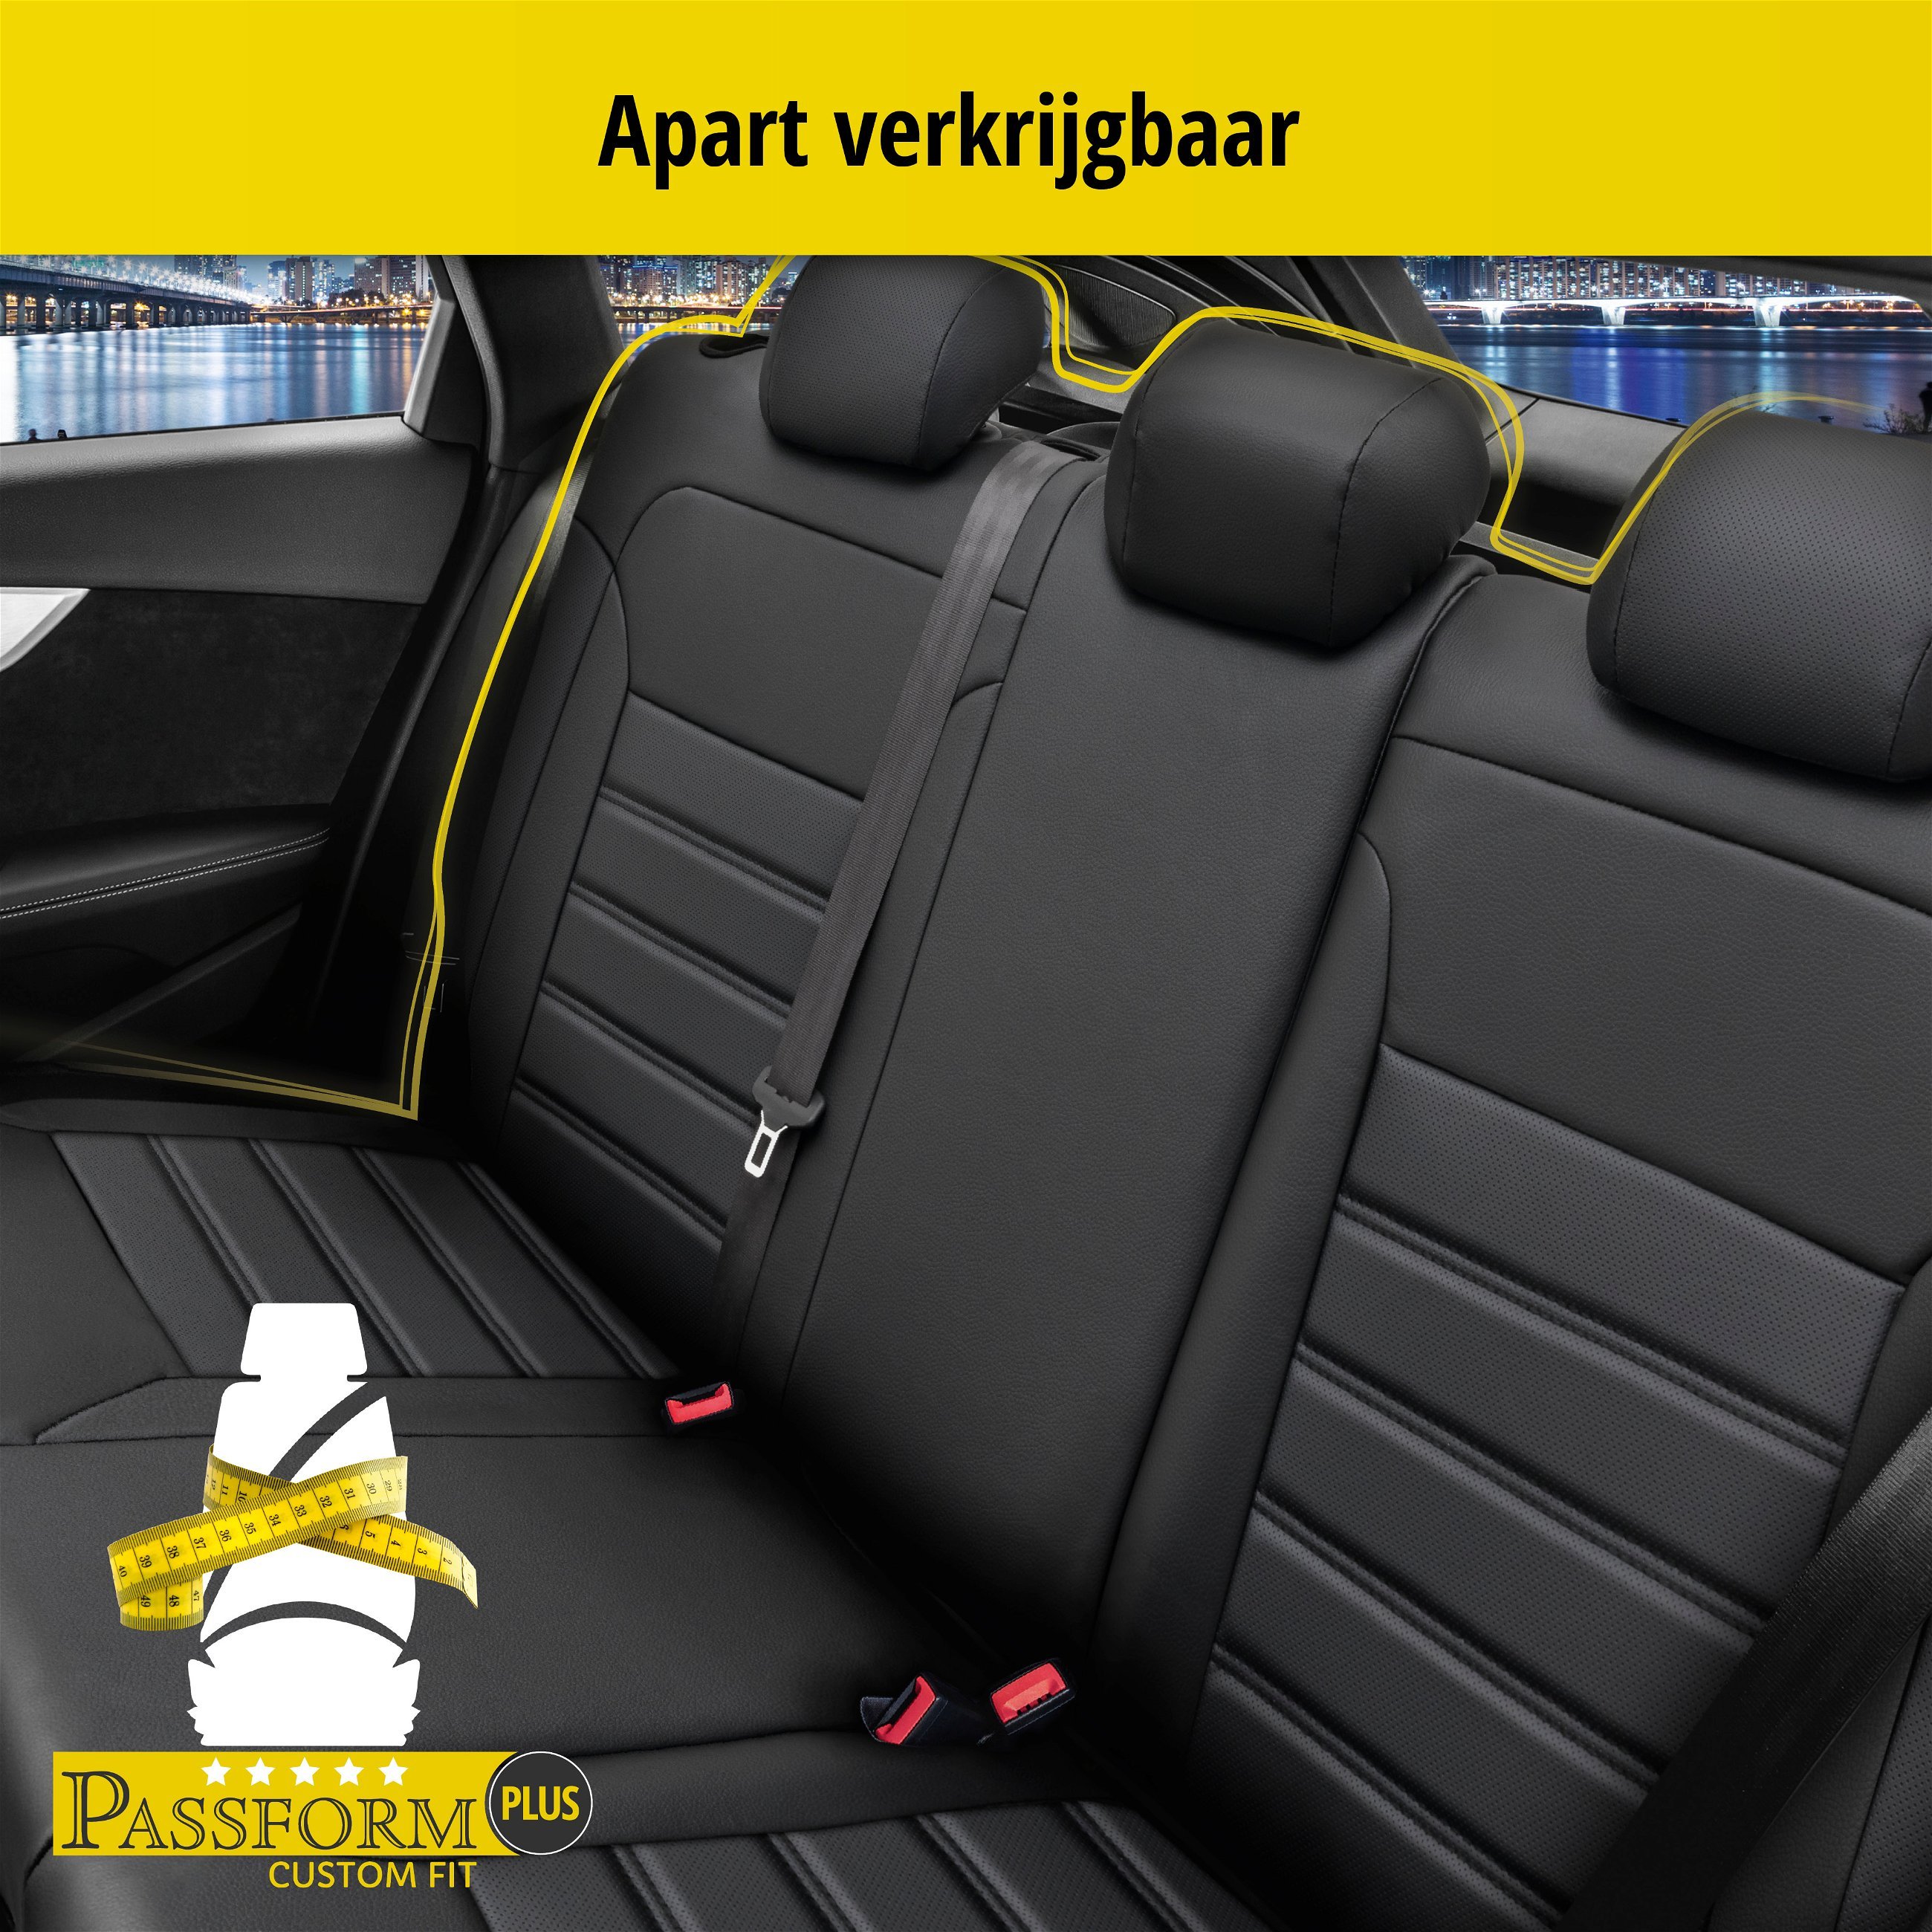 Auto stoelbekleding Robusto geschikt voor VW Passat Variant (3G5, CB5) 08/2014-Vandaag, 2 enkele zetelhoezen voor standard zetels